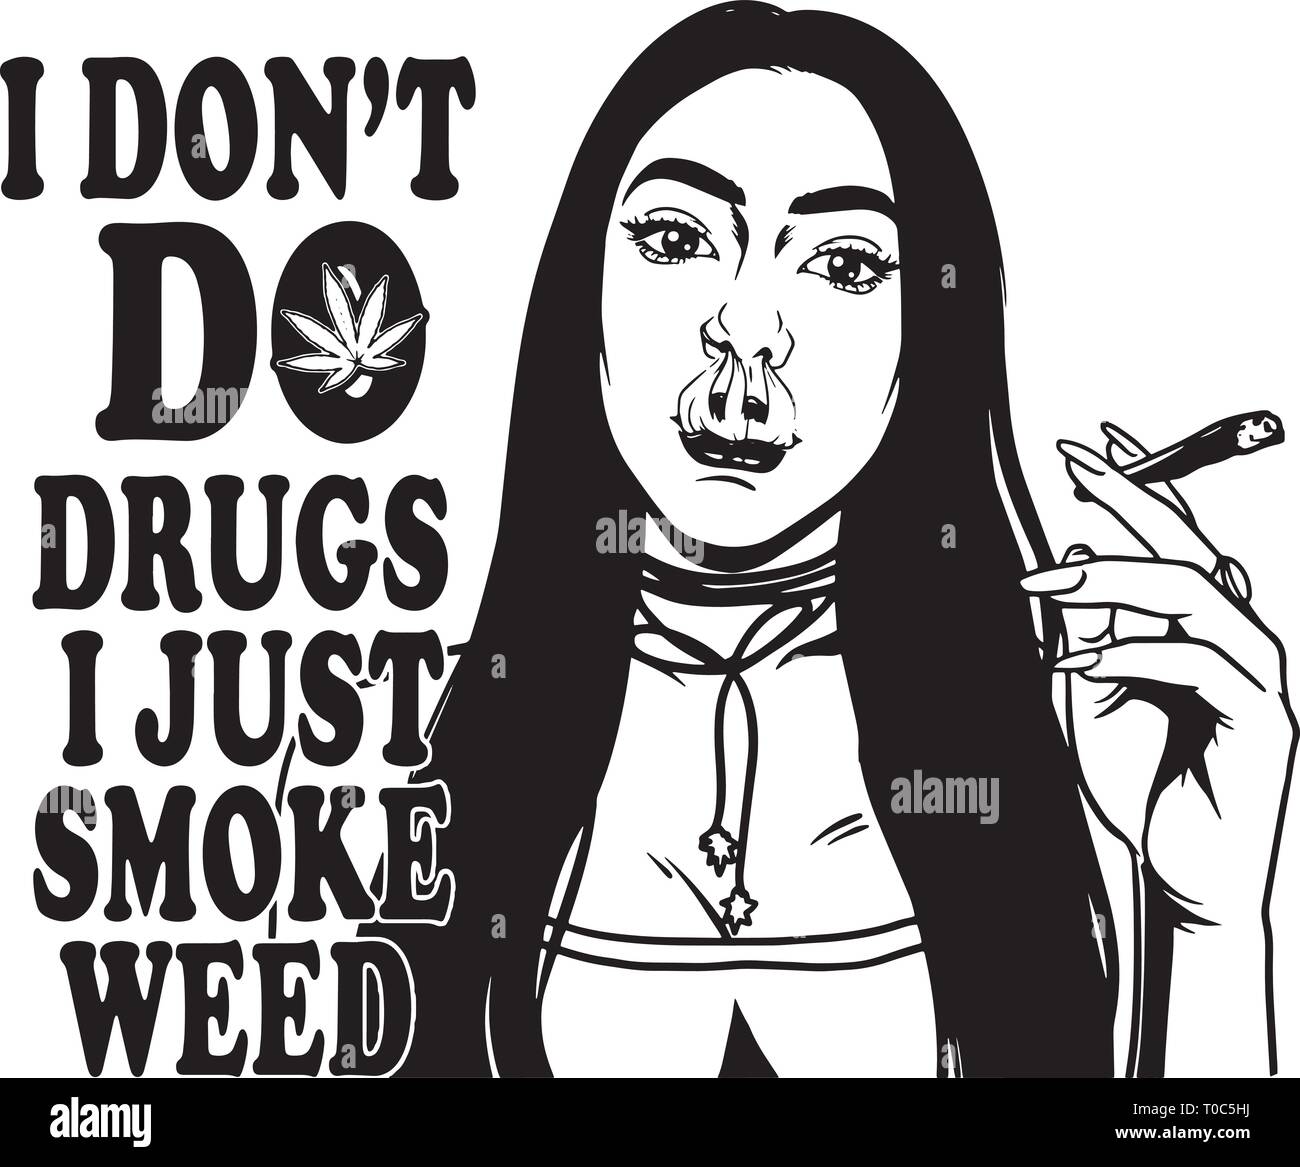 Stumpfe Weed Cannabis marihuana Topf Stein hohe Leben Raucher Droge 420 Mary Jane Stock Vektor